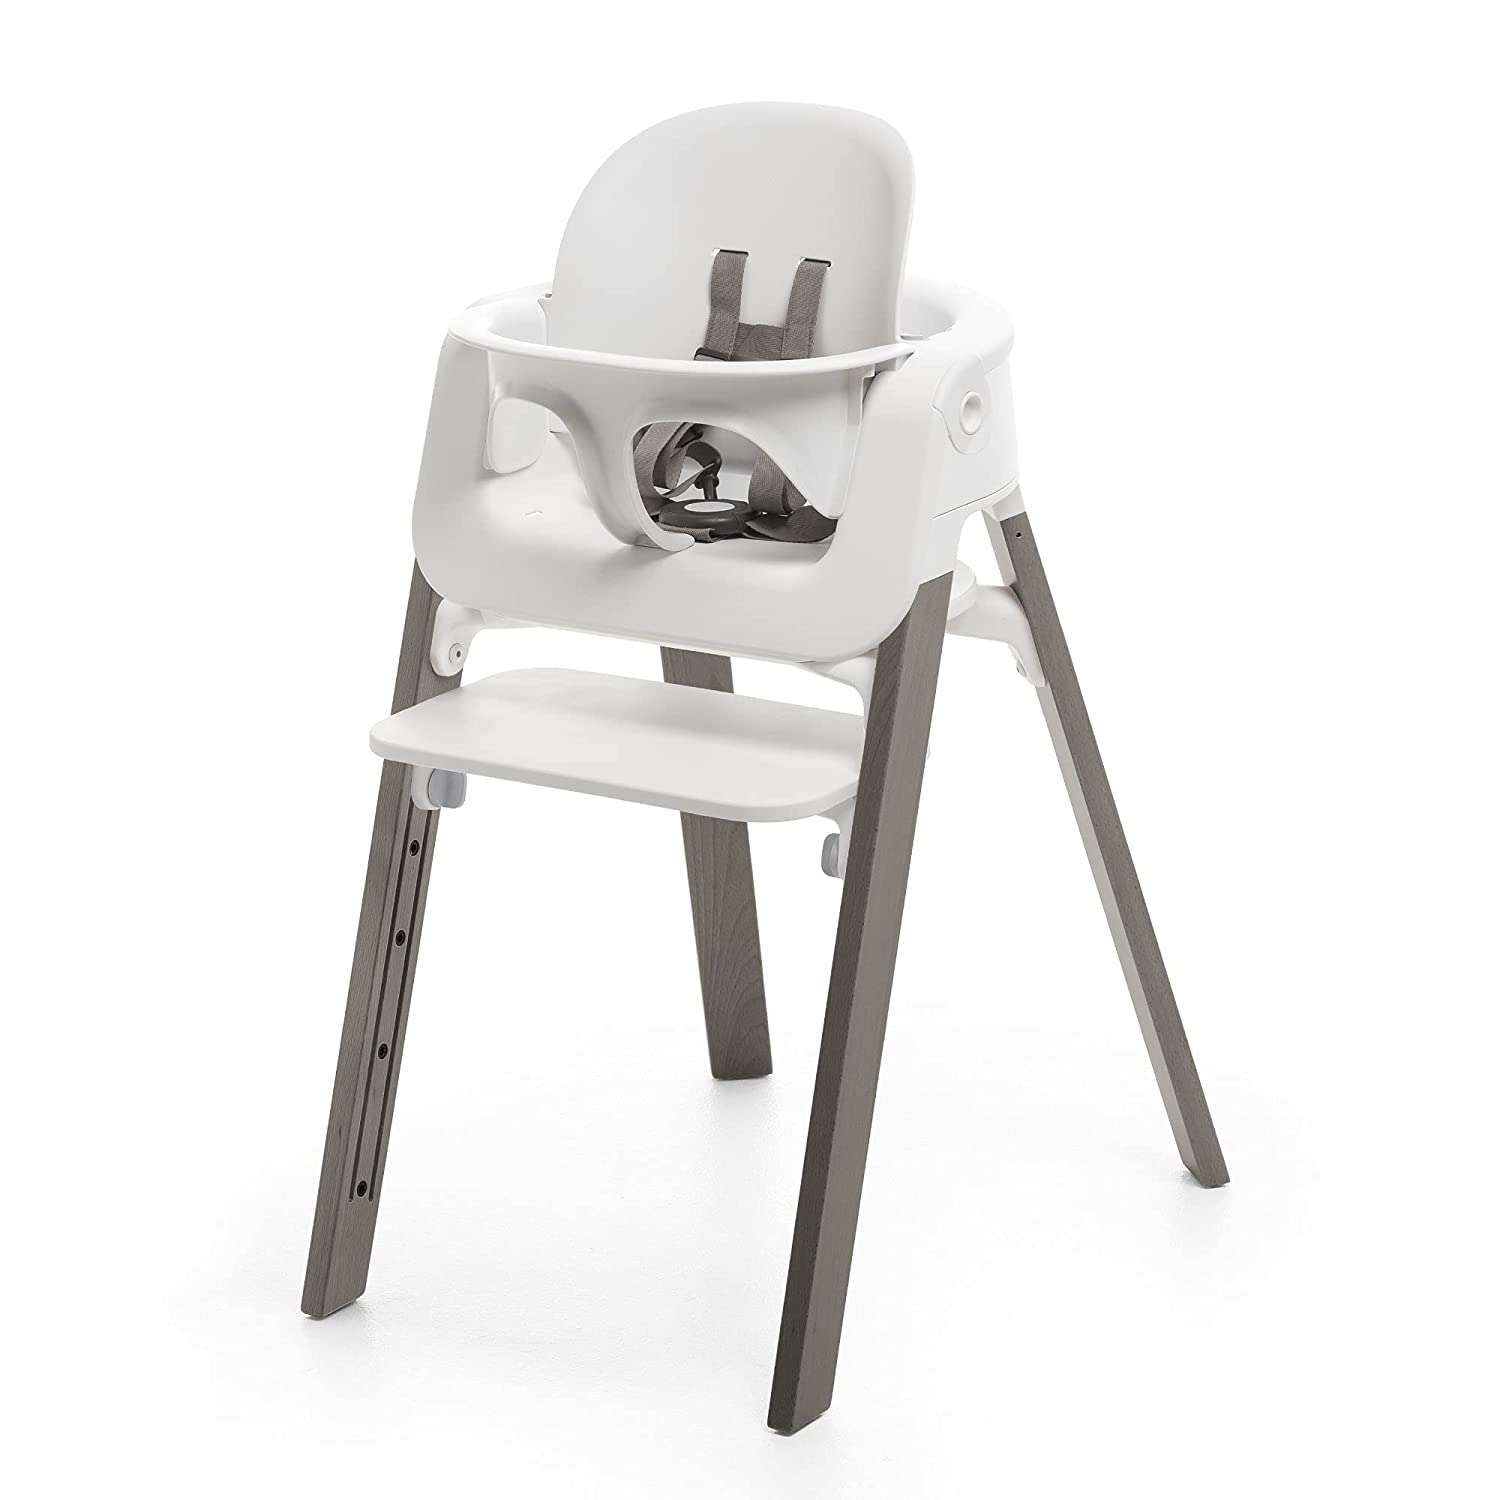 Детский стульчик-трансформер Stokke Steps, серый/белый посуда stokke подложка ezpz под столовые приборы для подноса steps